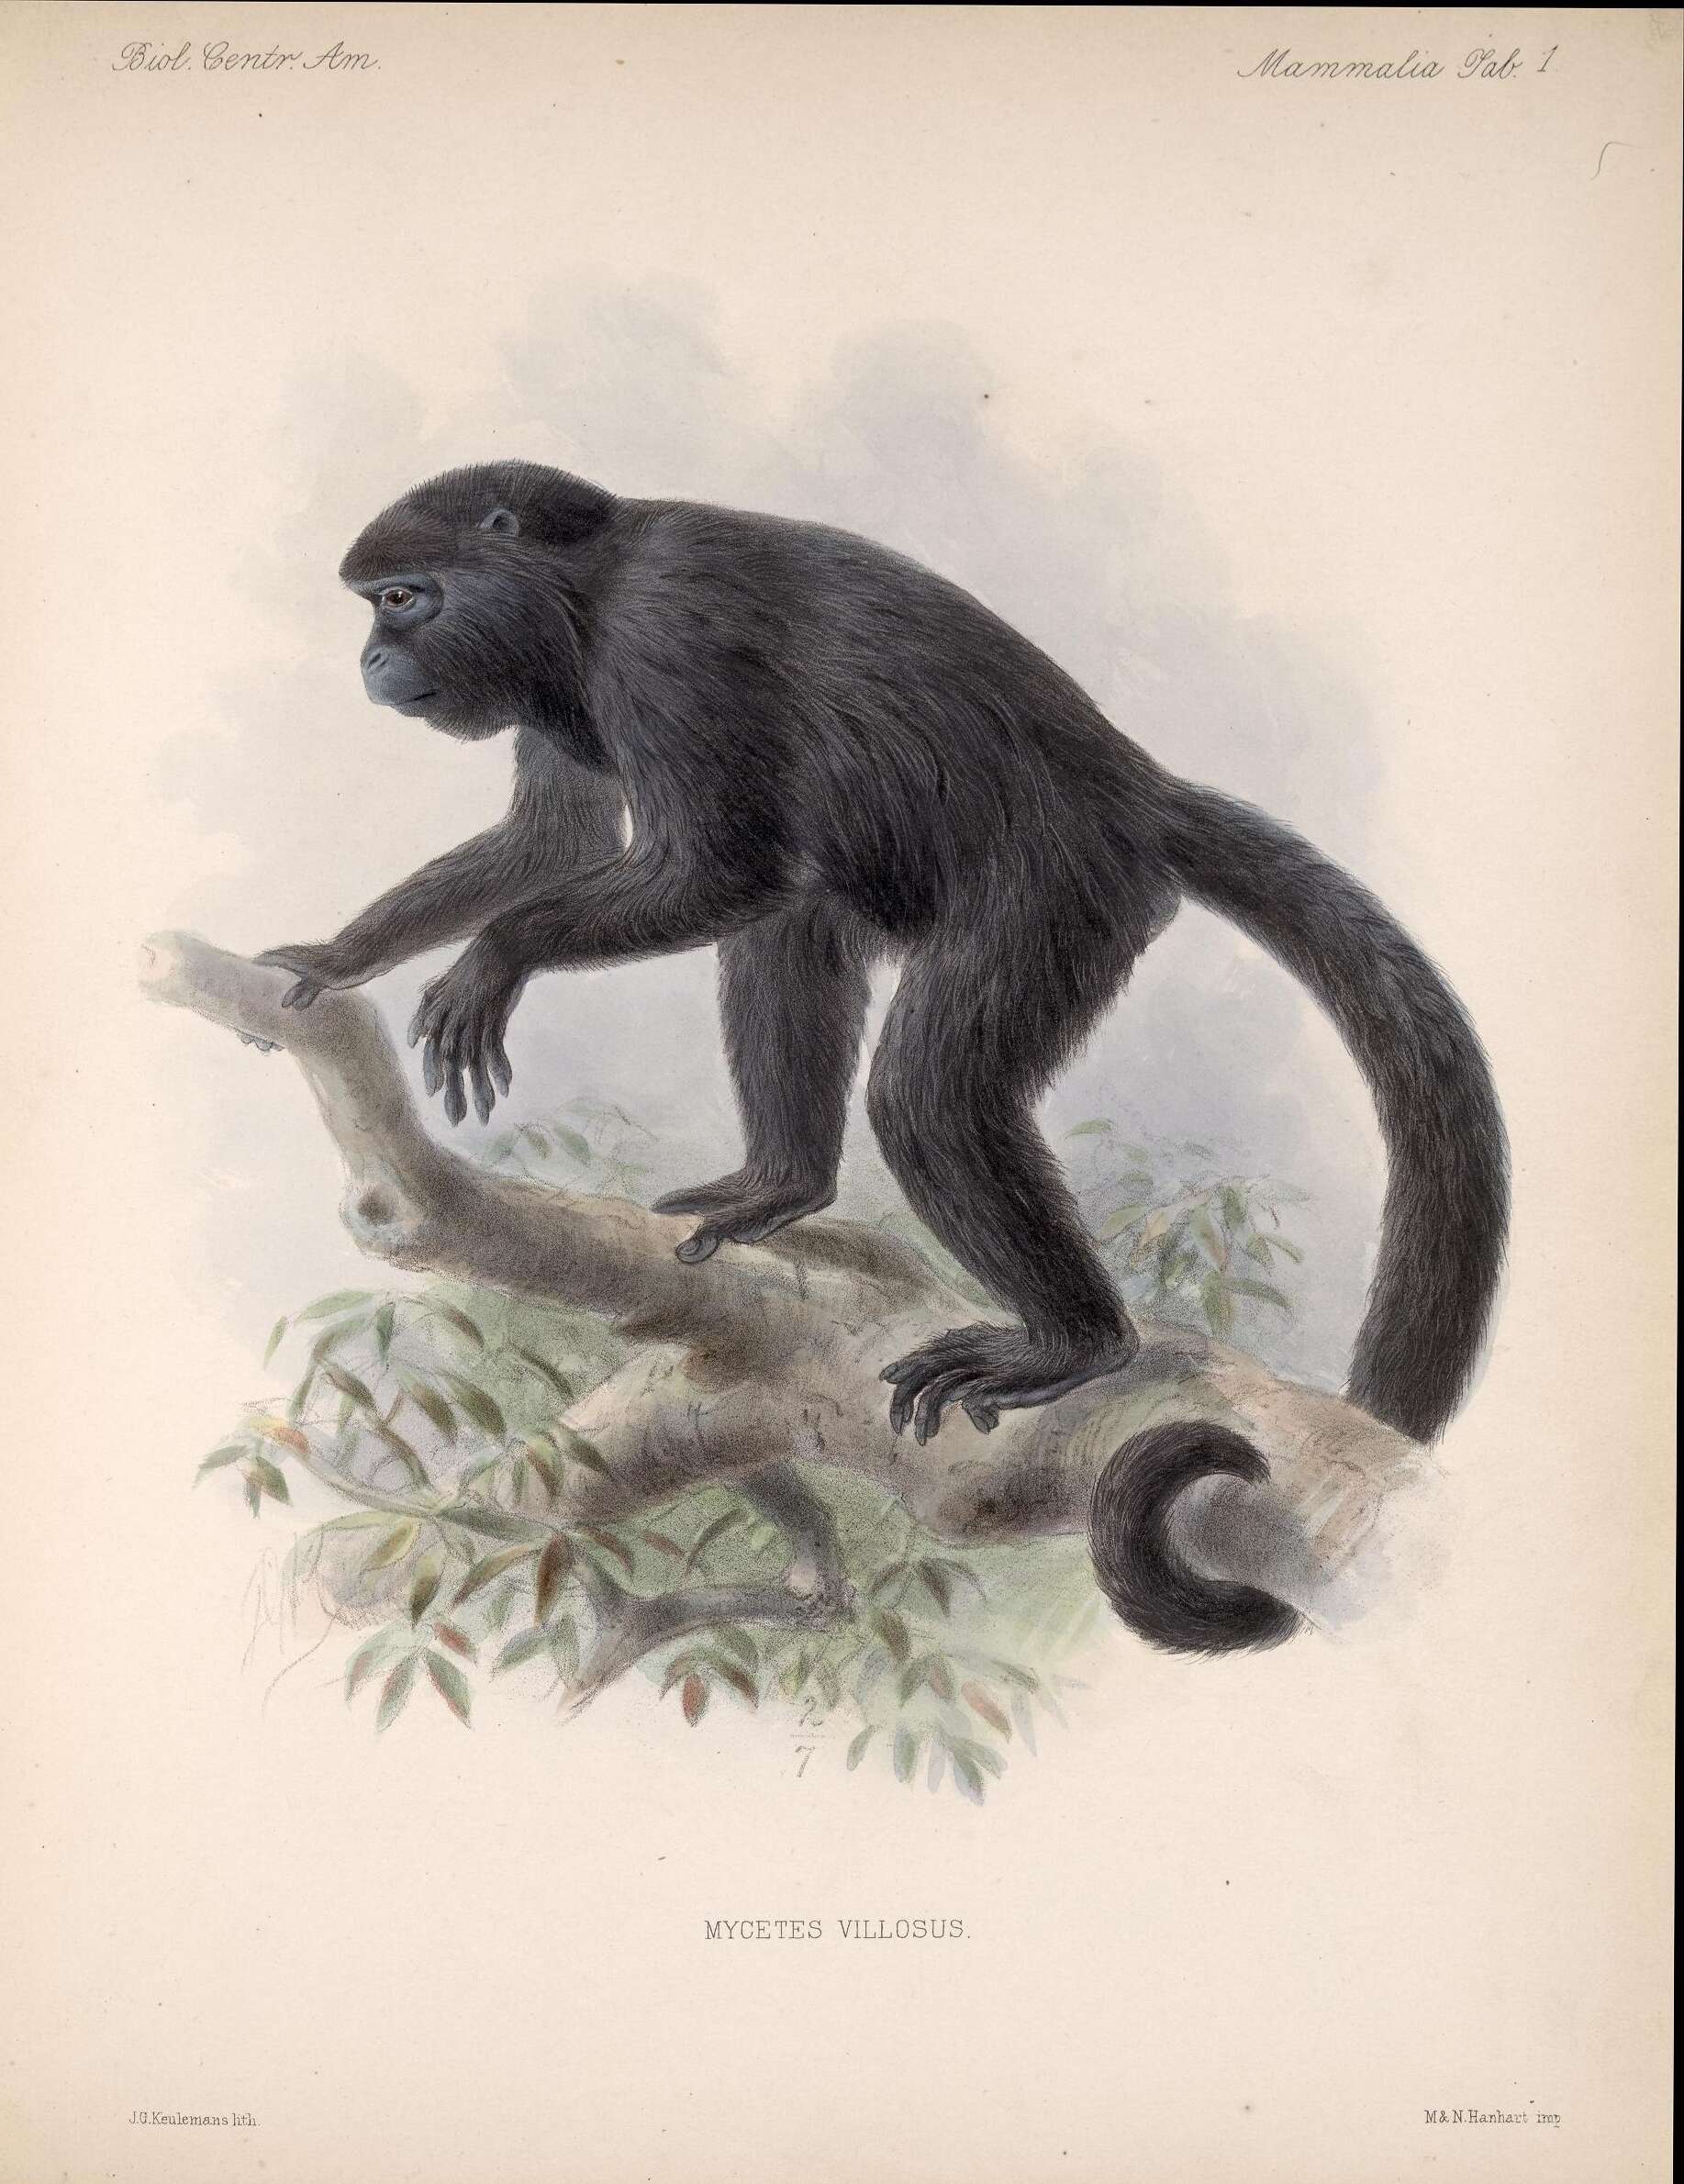 Image of Black Howling Monkey